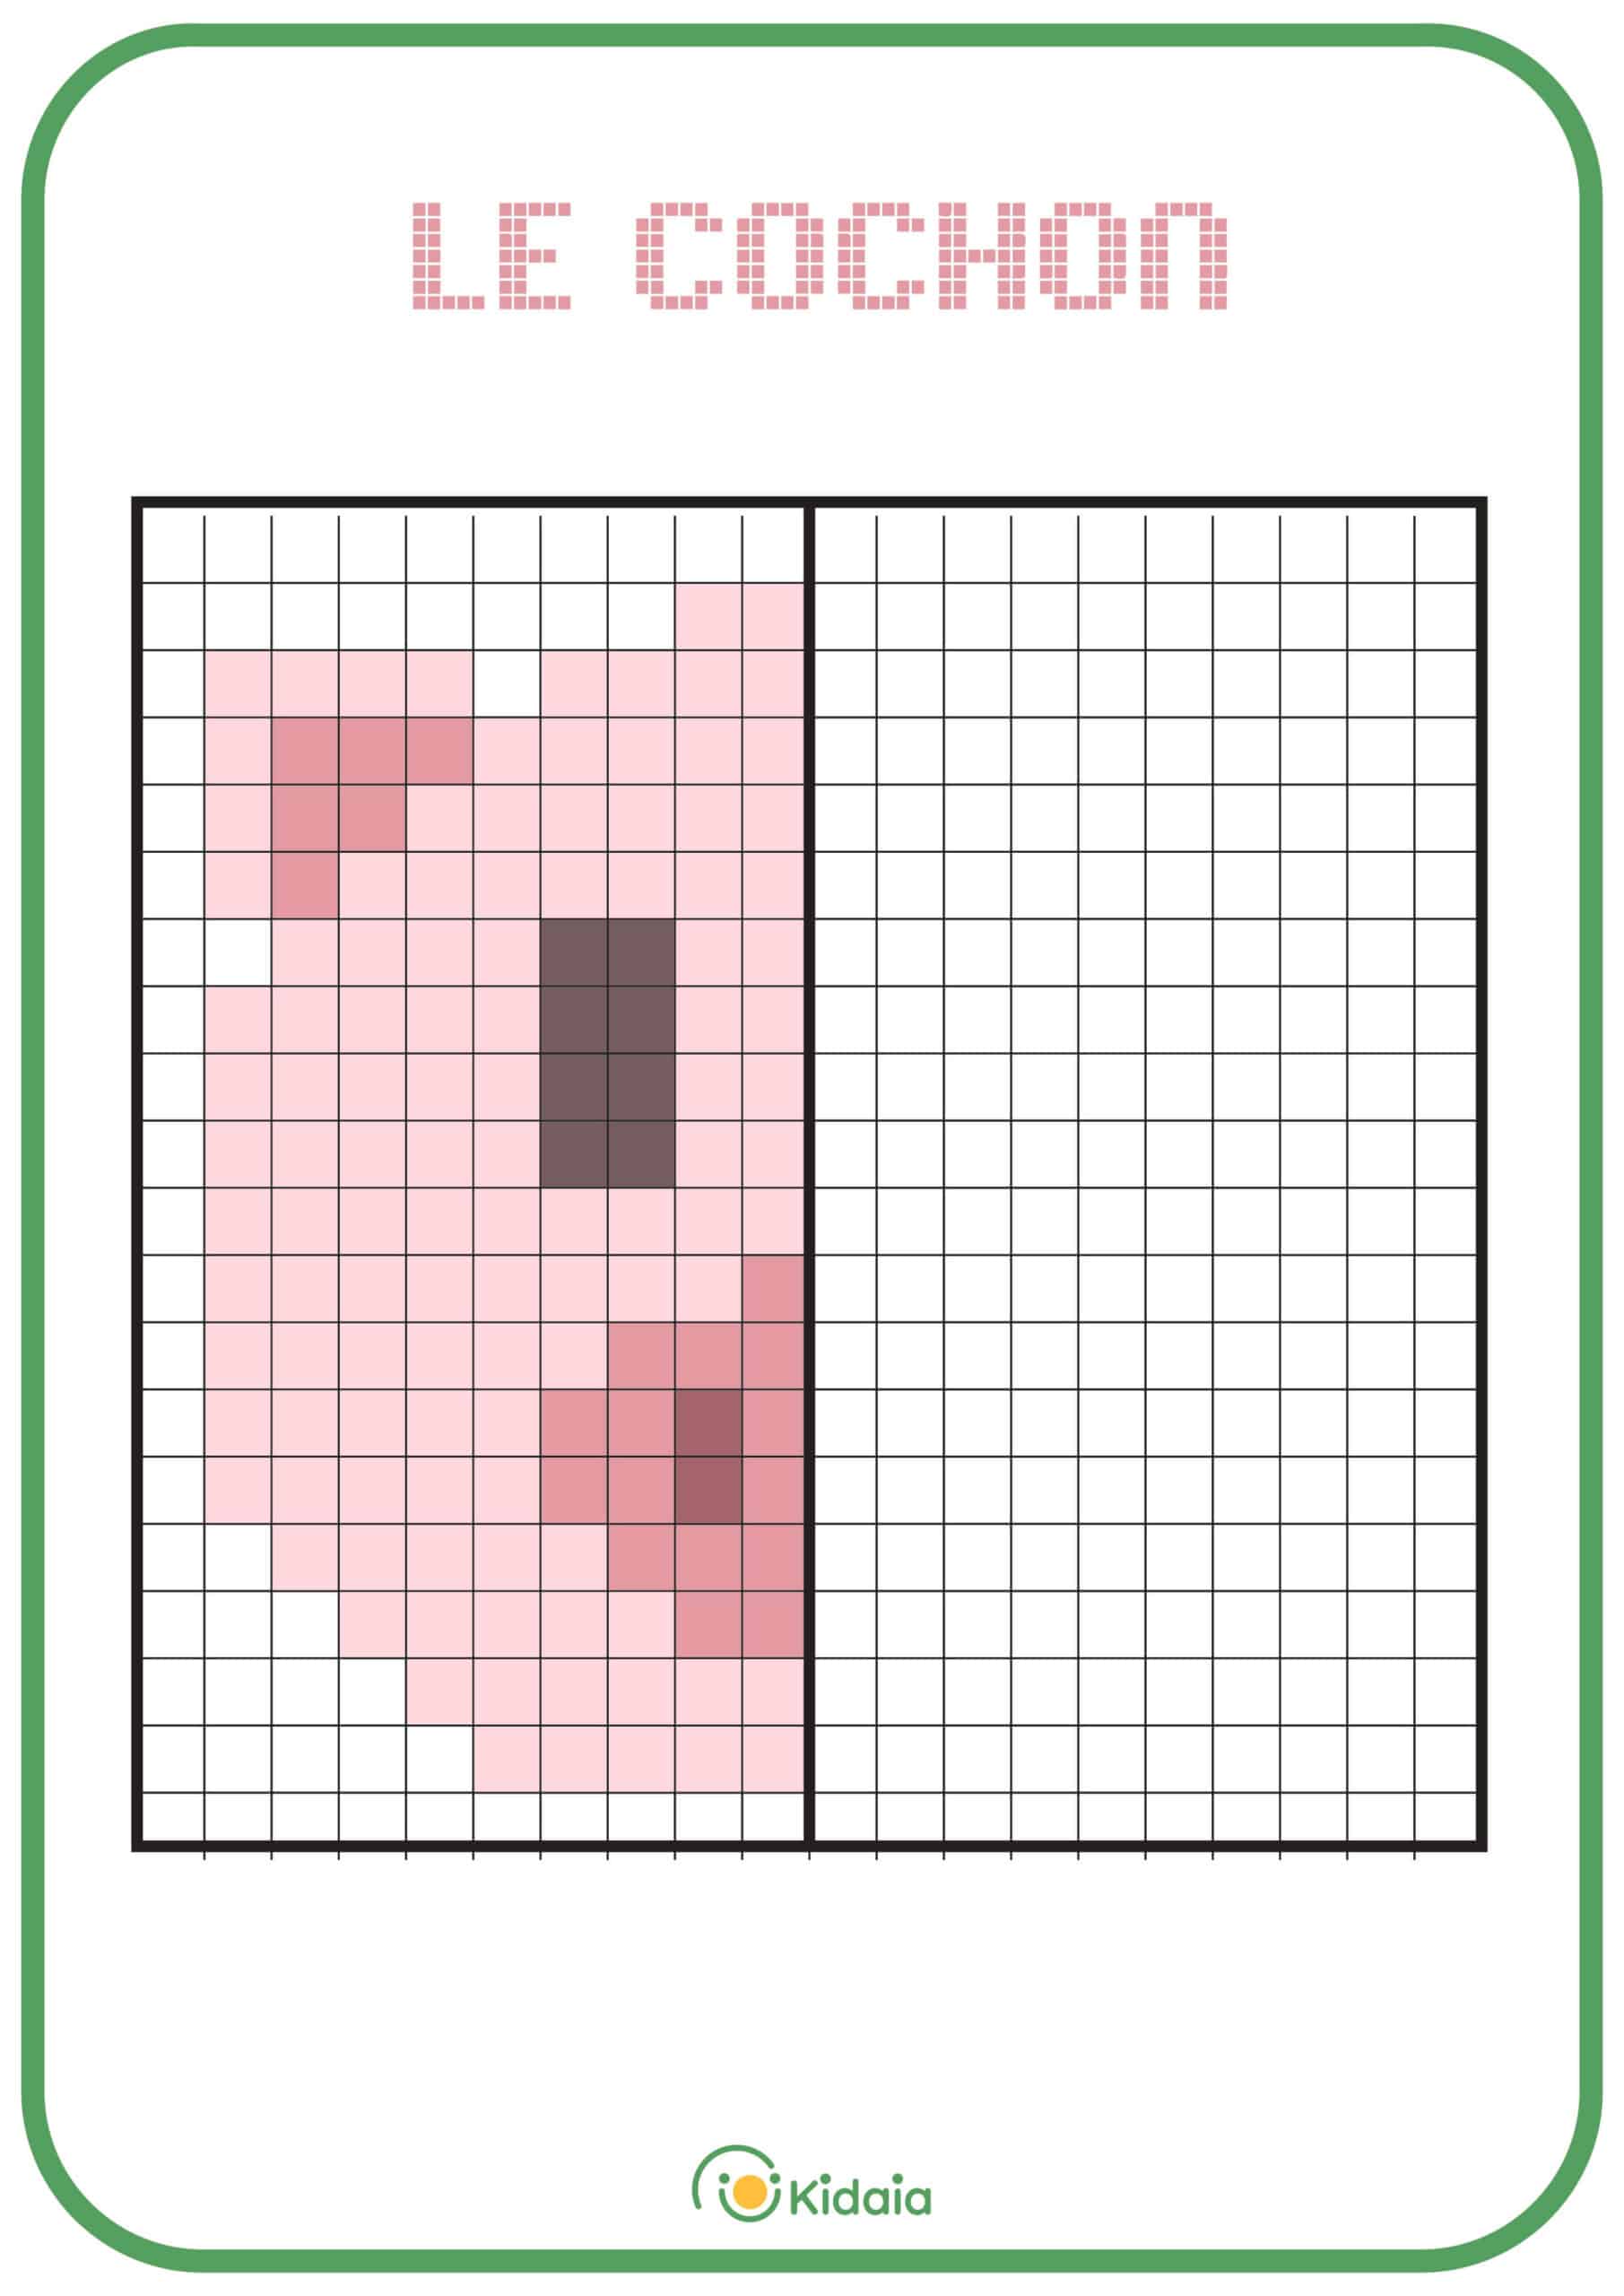 Image de cochon en pixel art pour que les enfants apprennent la symétrie.